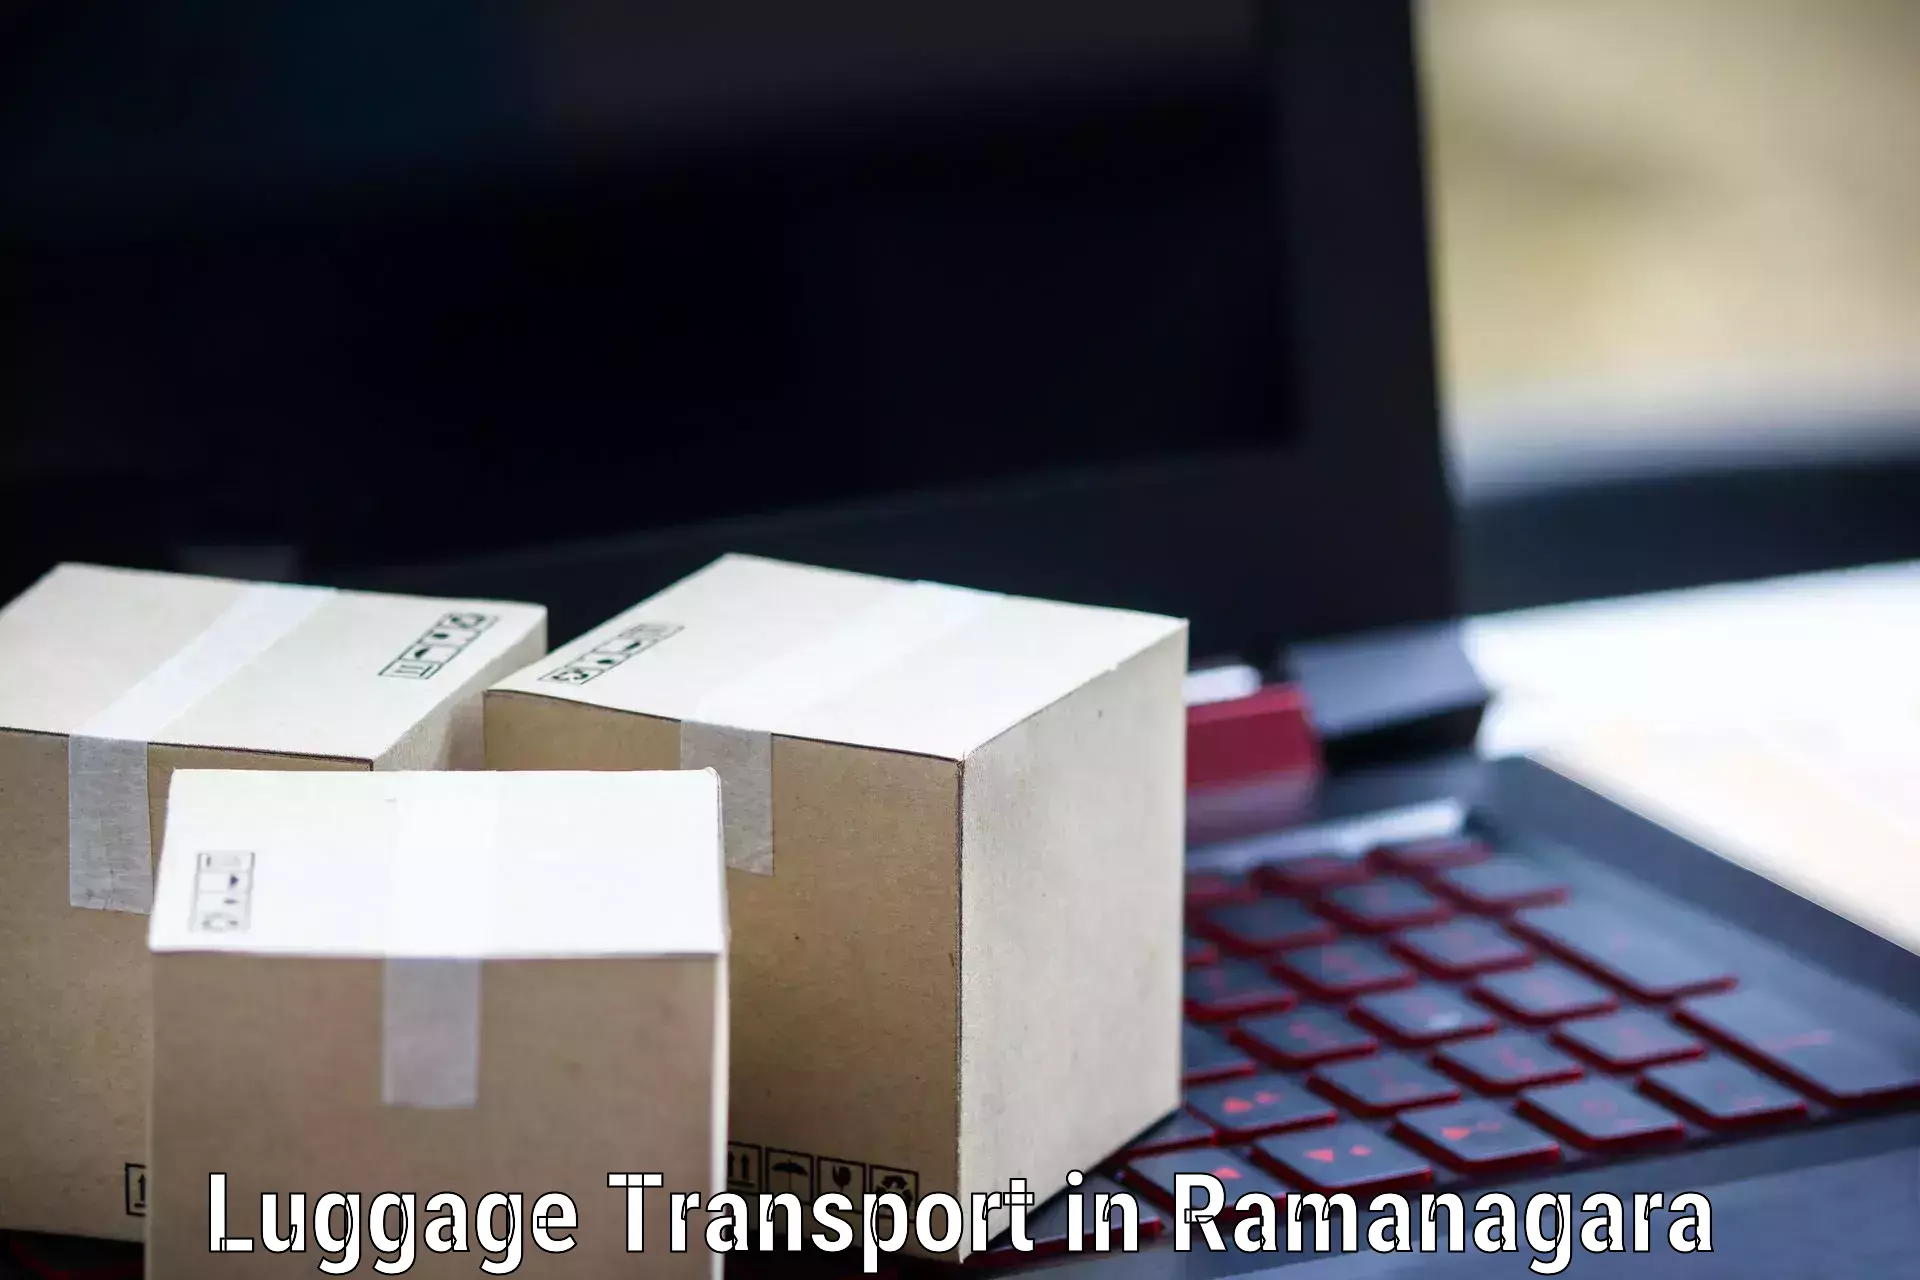 Corporate baggage transport in Ramanagara